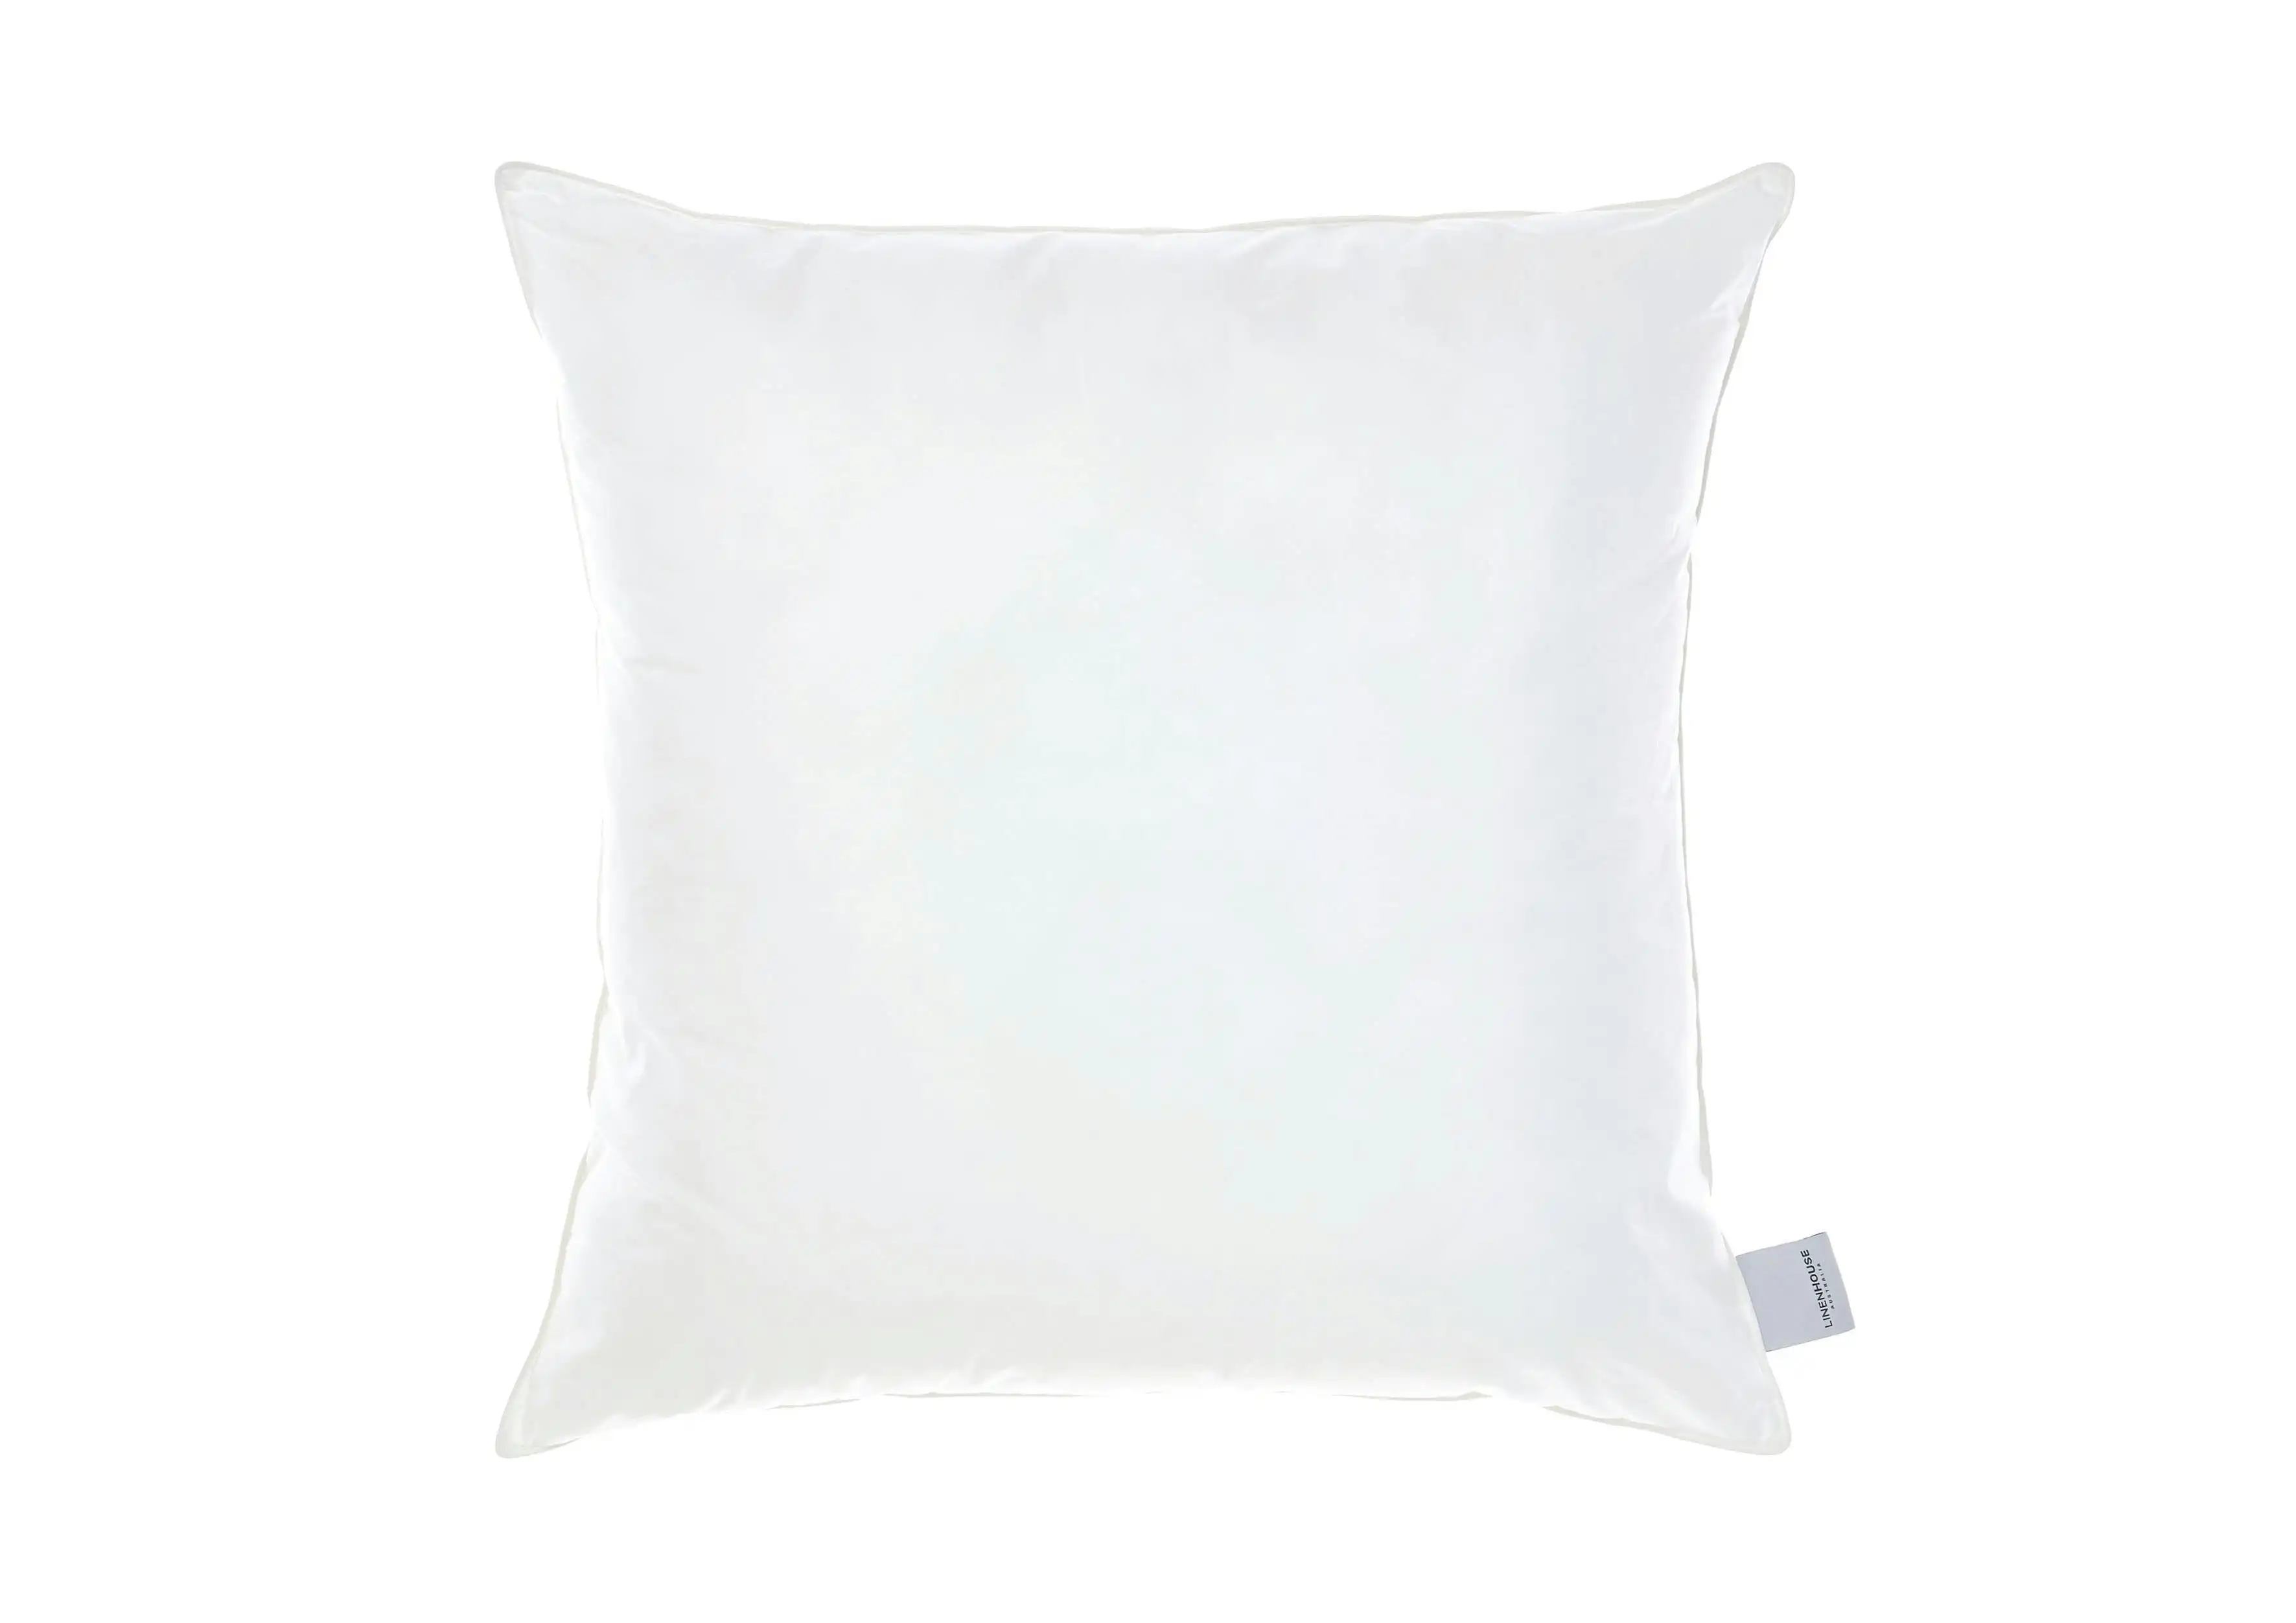 Linen House All-Seasons European Pillow - 1300 GSM